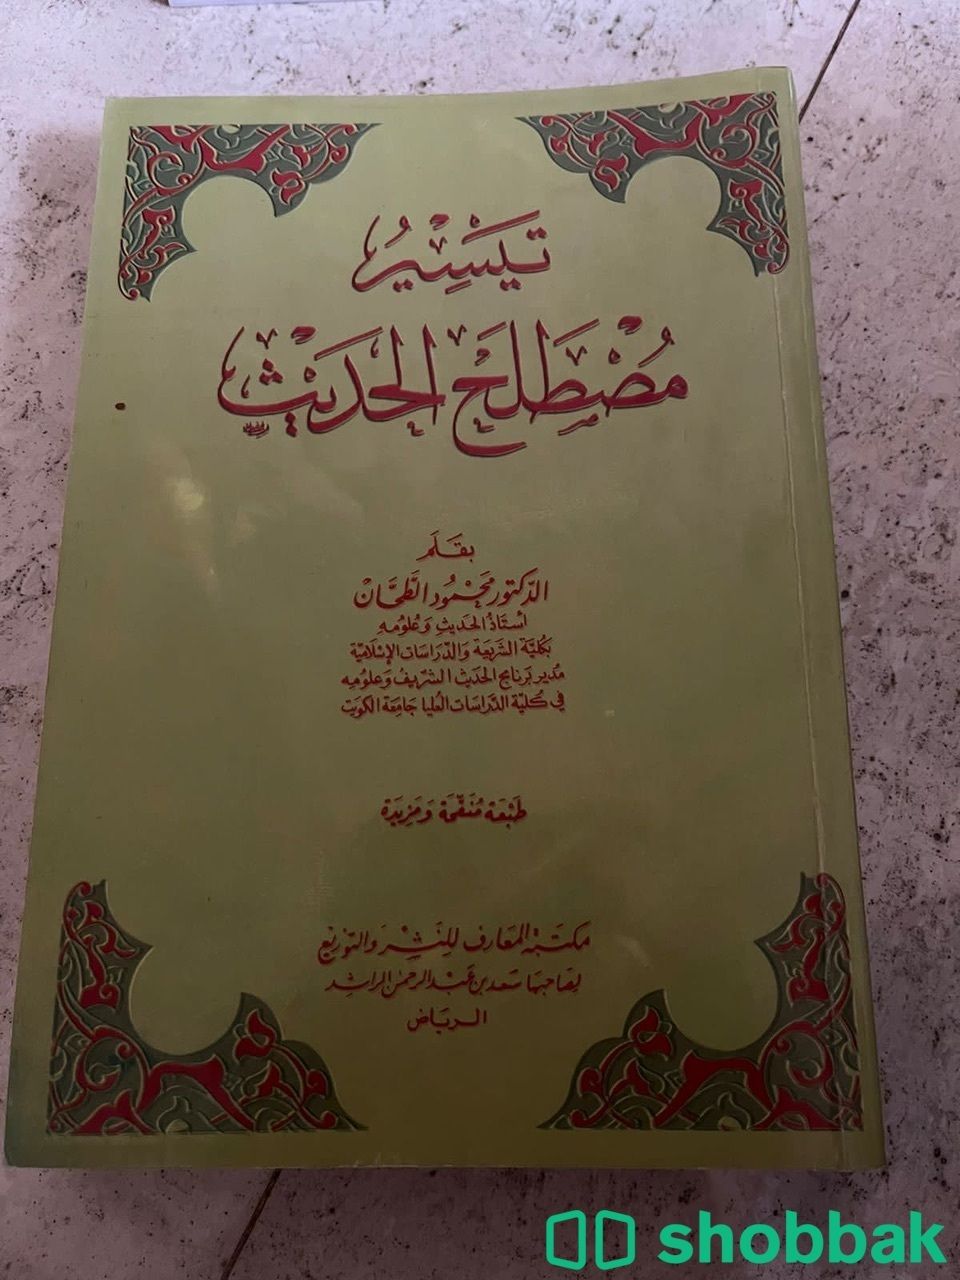 كتب دينية و اكاديمية  Shobbak Saudi Arabia